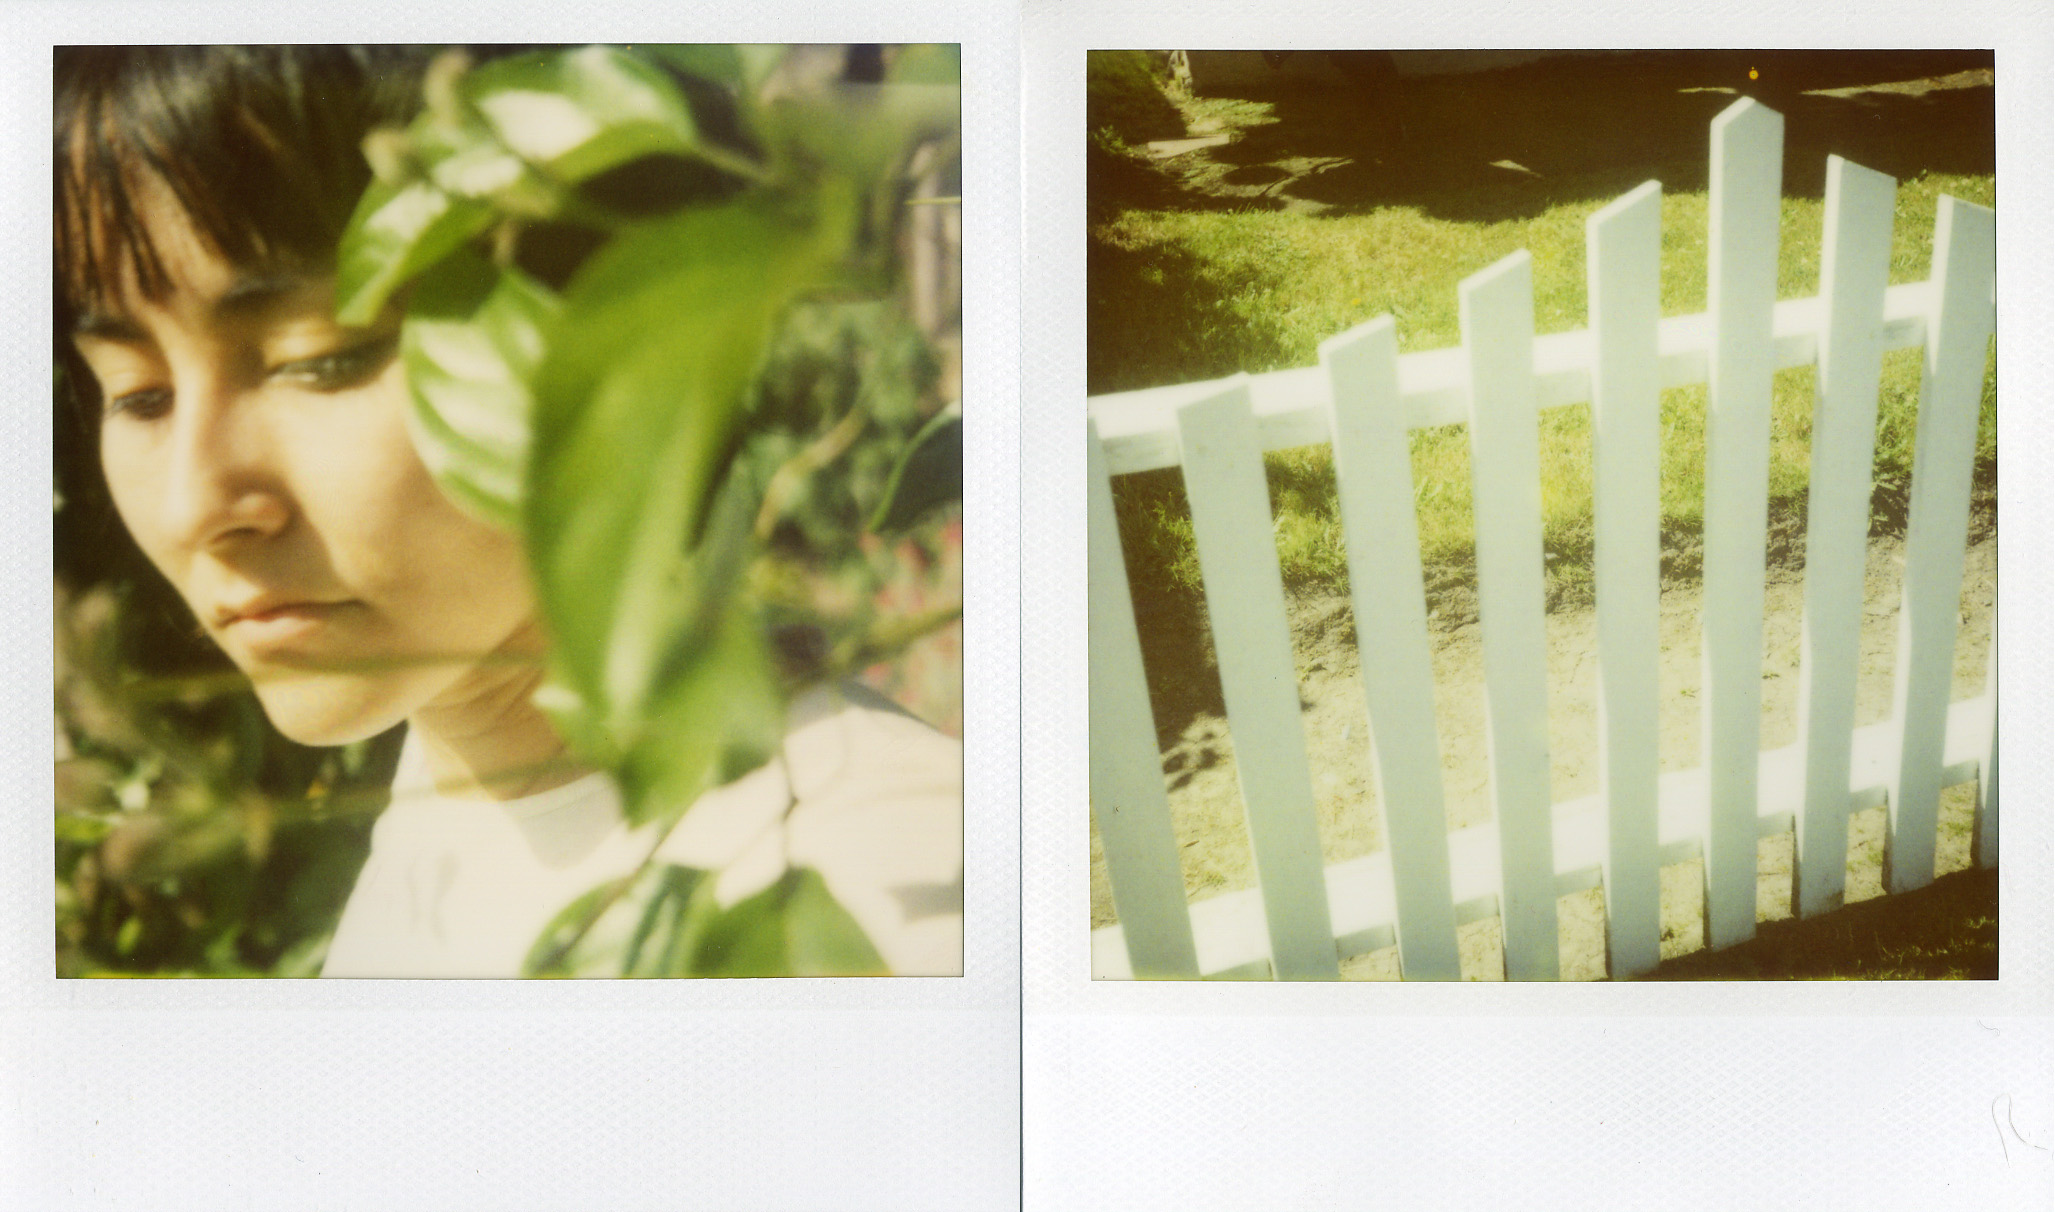 polaroid me and white pickett fence